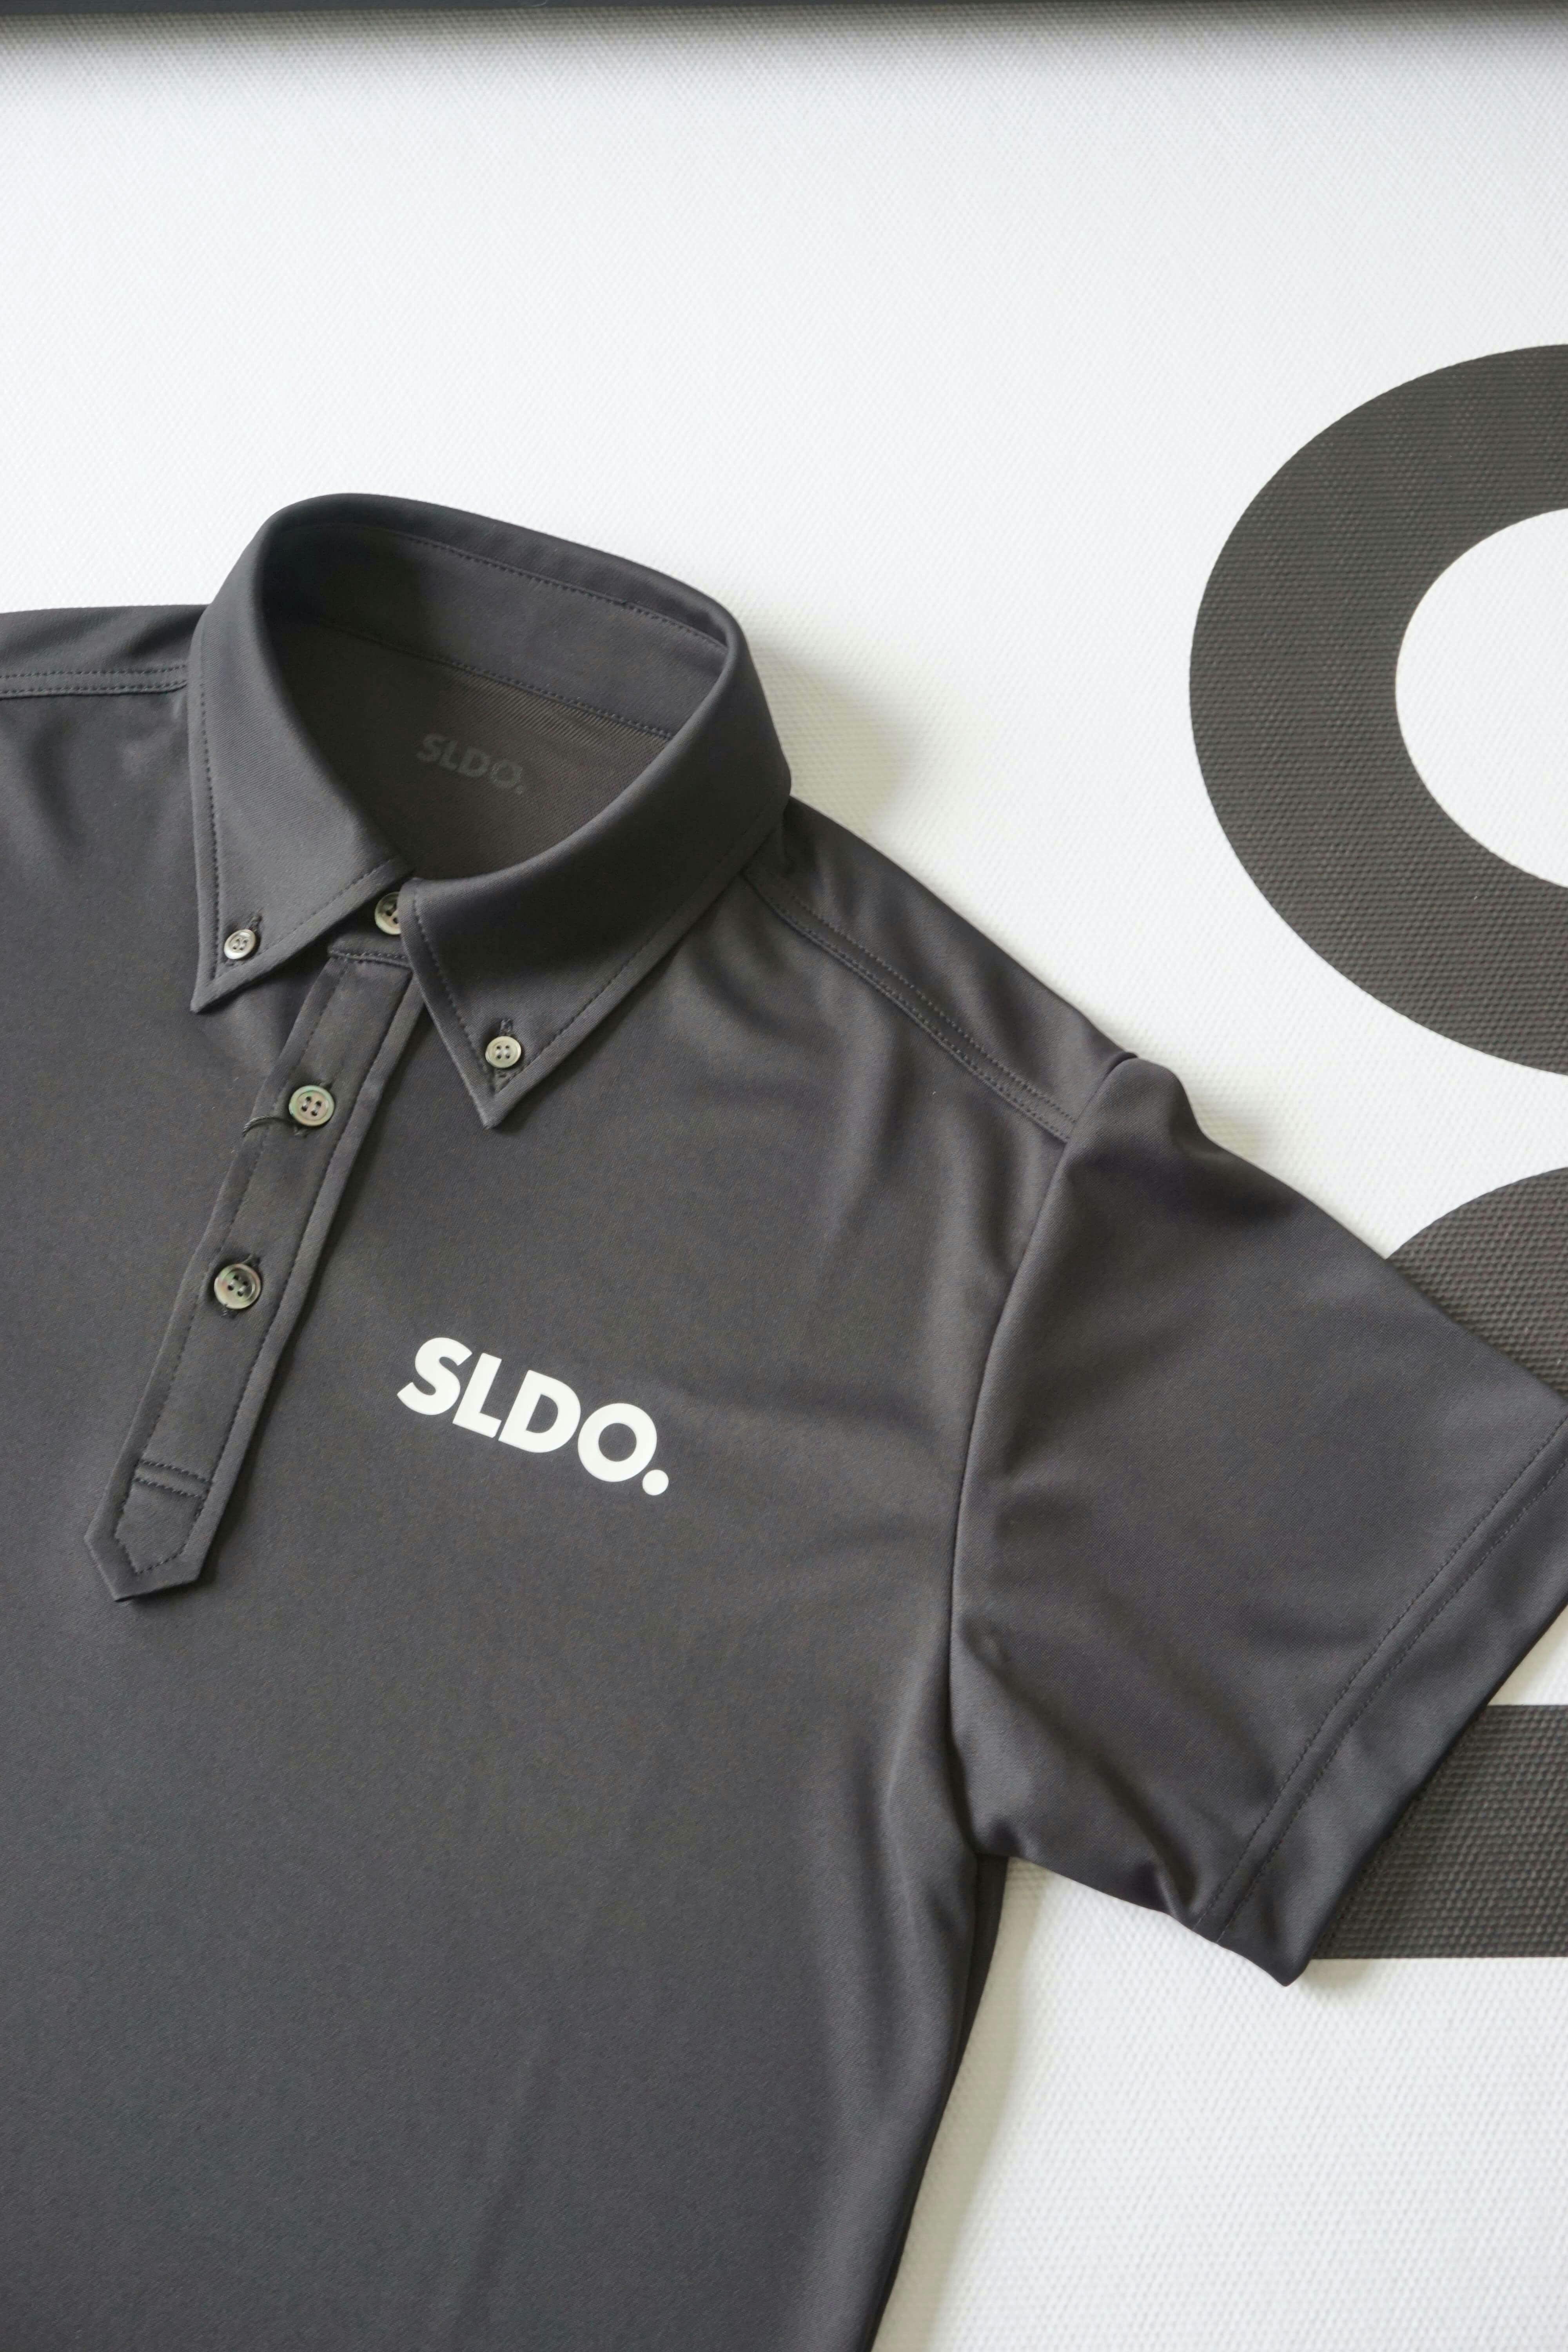 驚き価格SLDO.エスルドゴルフセットアップM黒/半袖ポロシャツショートパンツ2点 メンズウェア